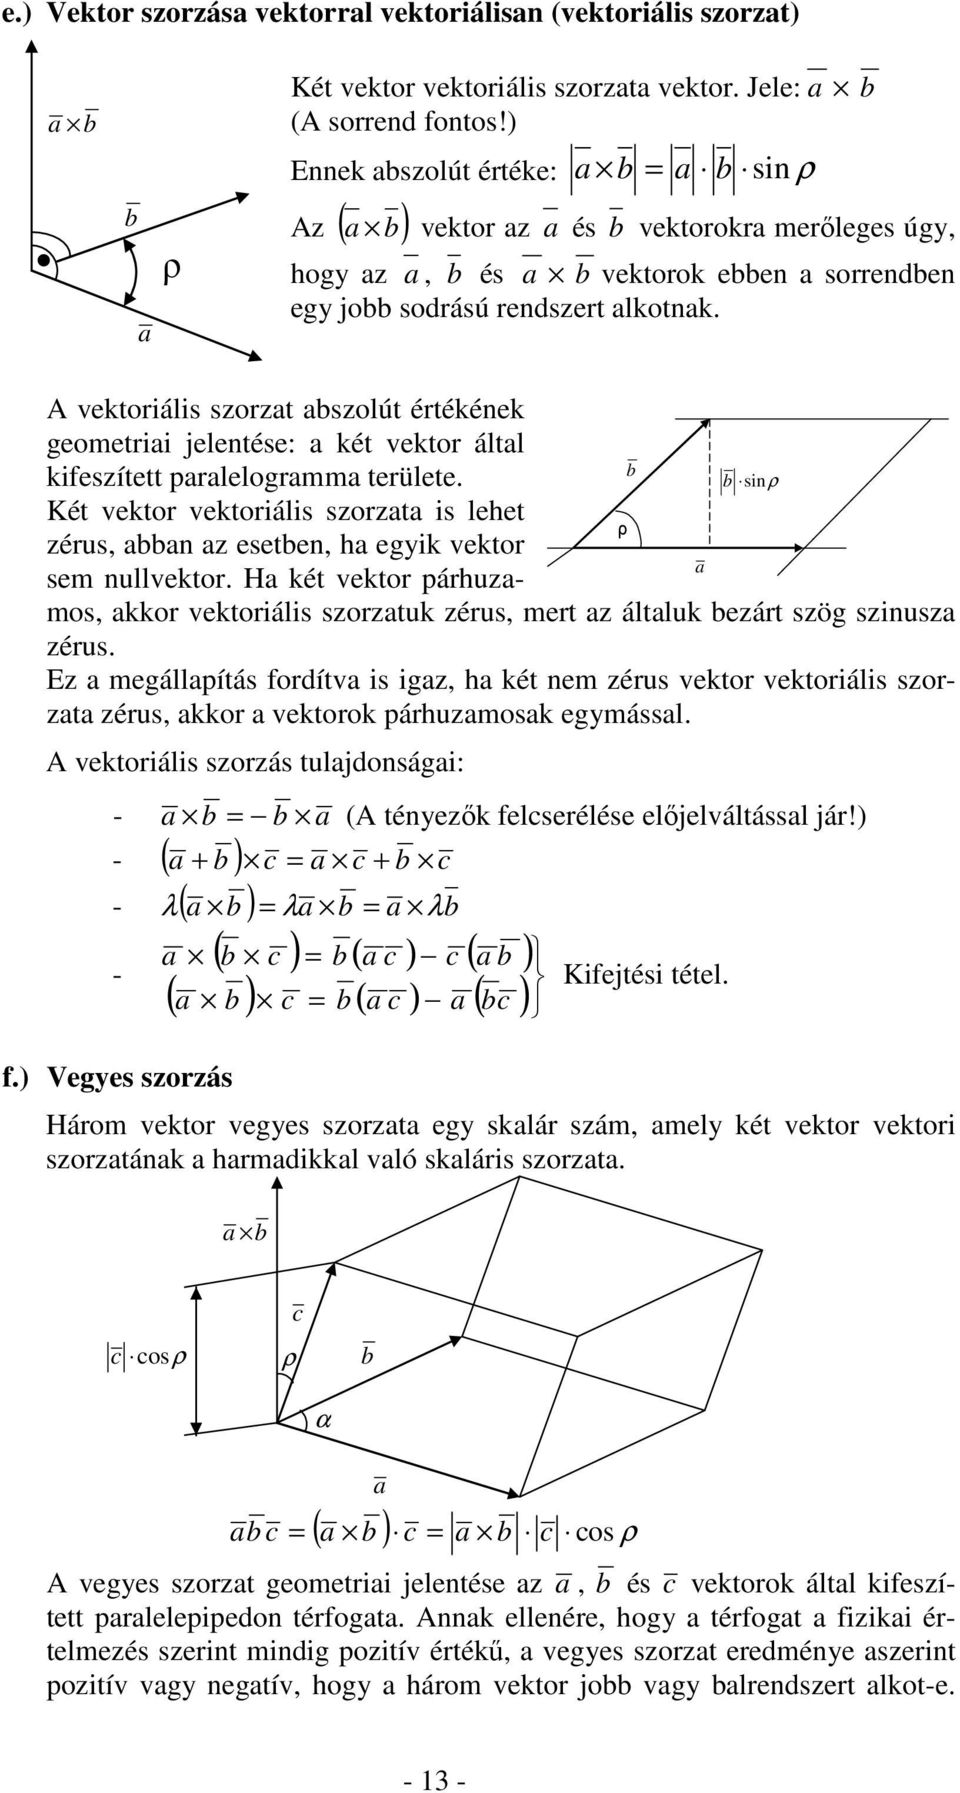 vektoráls sort bsolút értékének geometr jelentése: két vektor áltl kfesített prlelogrmm területe. Két vektor vektoráls sort s lehet érus, bbn esetben, h egk vektor sem nullvektor.